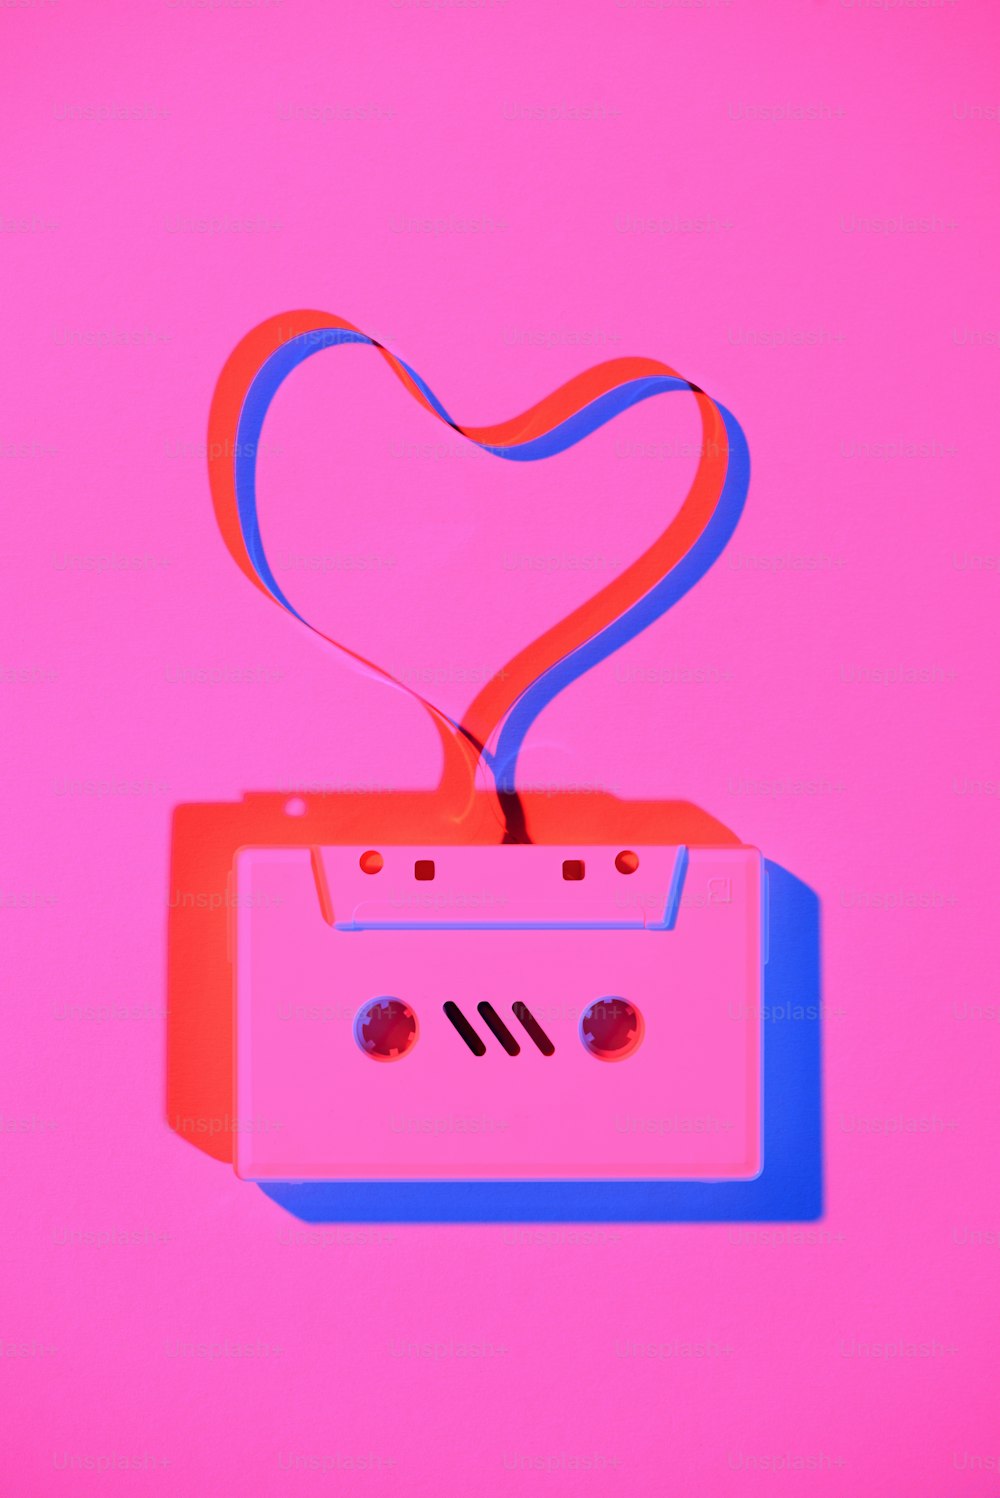 Imagen rosa tonificada de casete de audio retro con cinta adhesiva en forma de corazón sobre la mesa